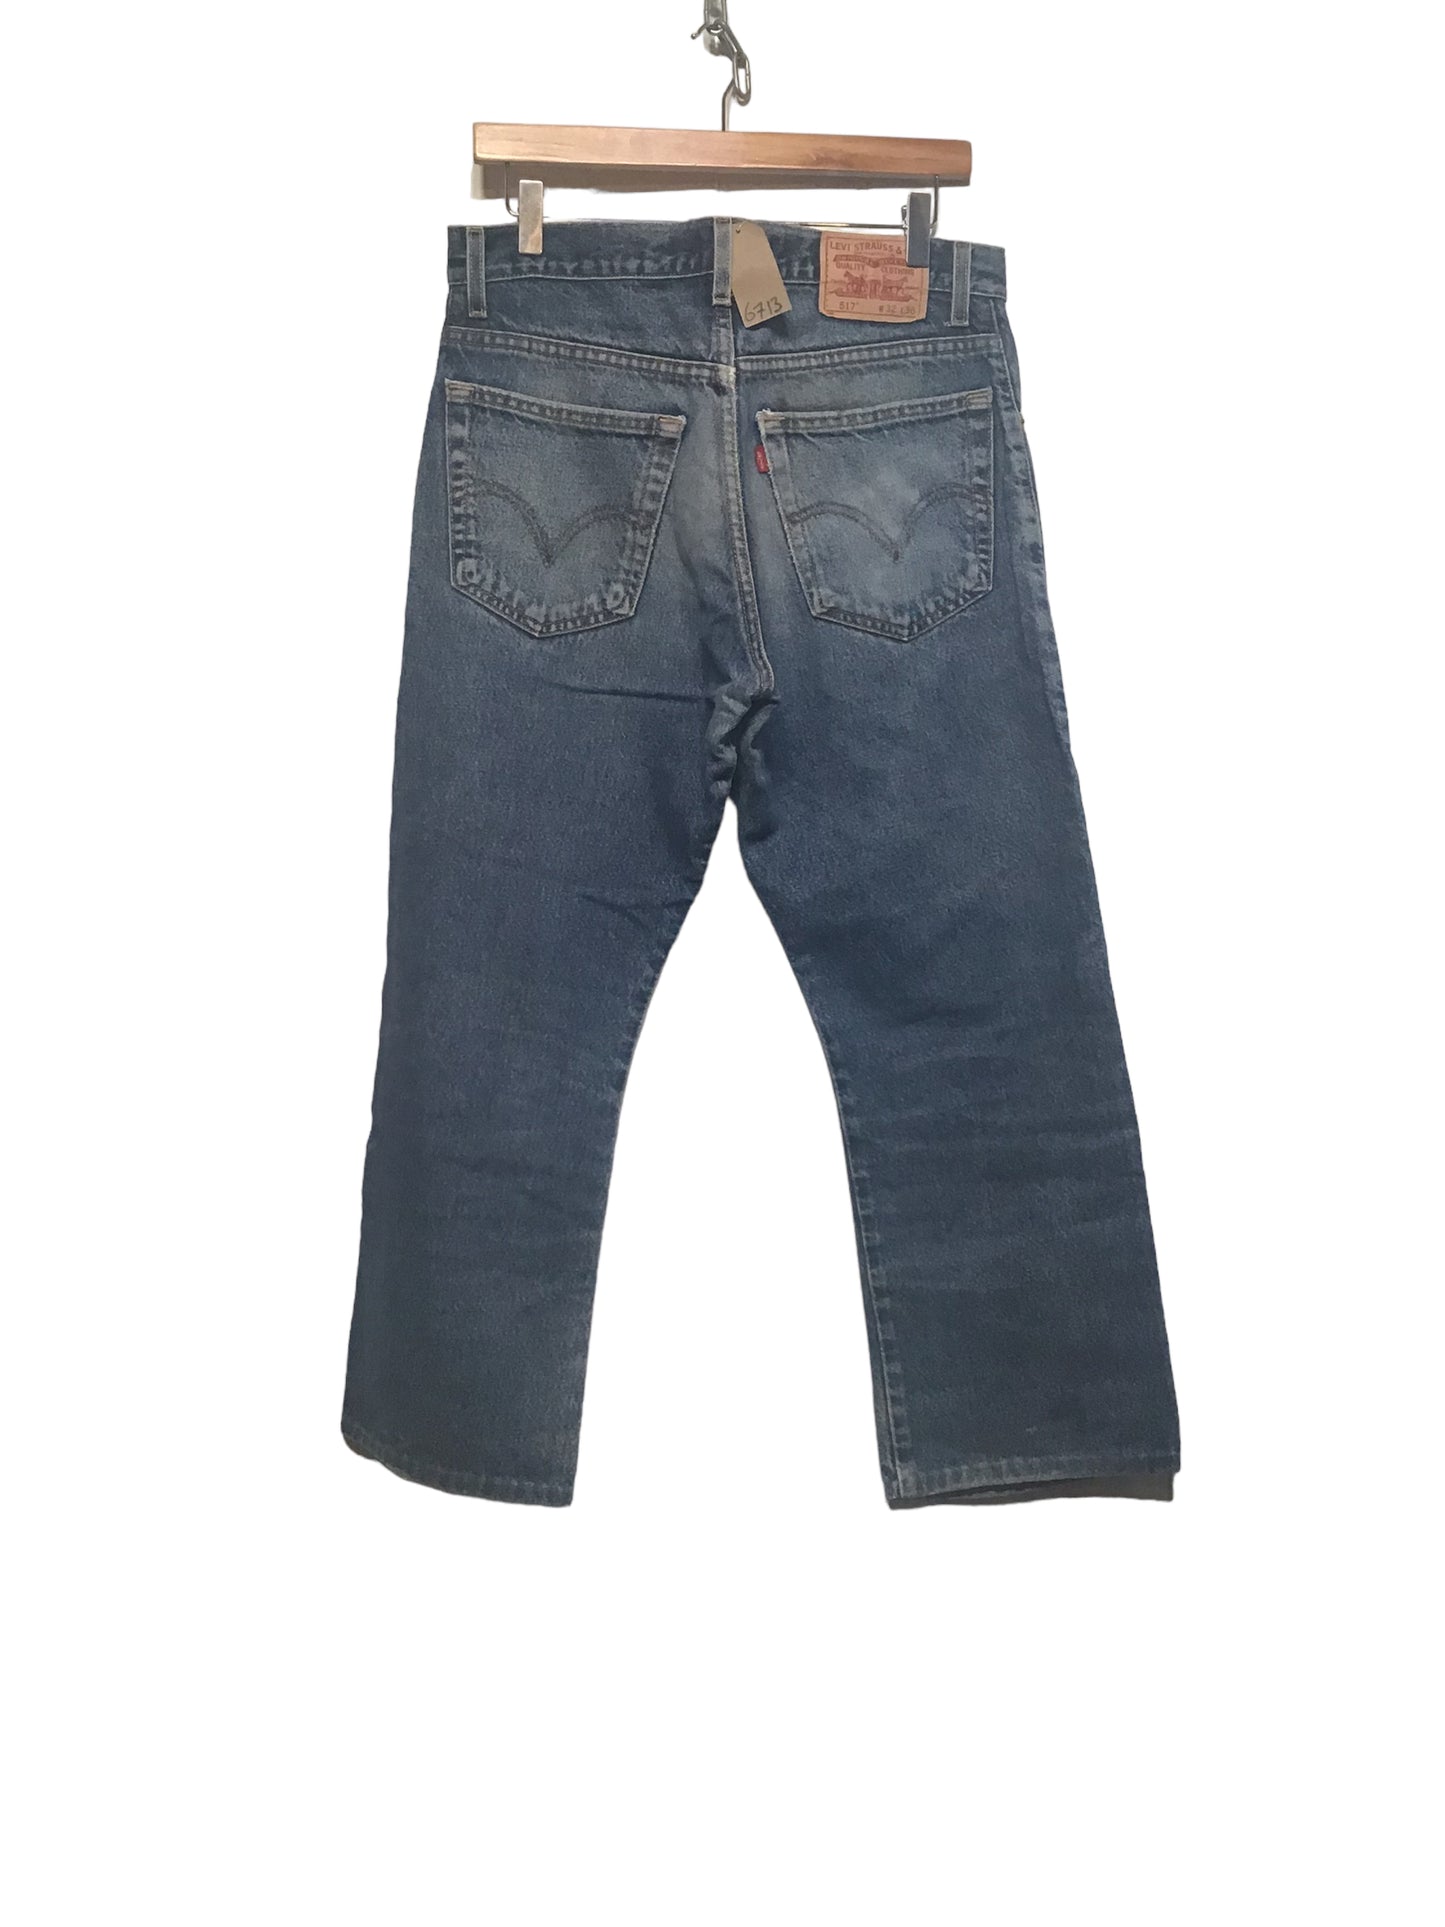 Levi 517 Jeans (32x26)